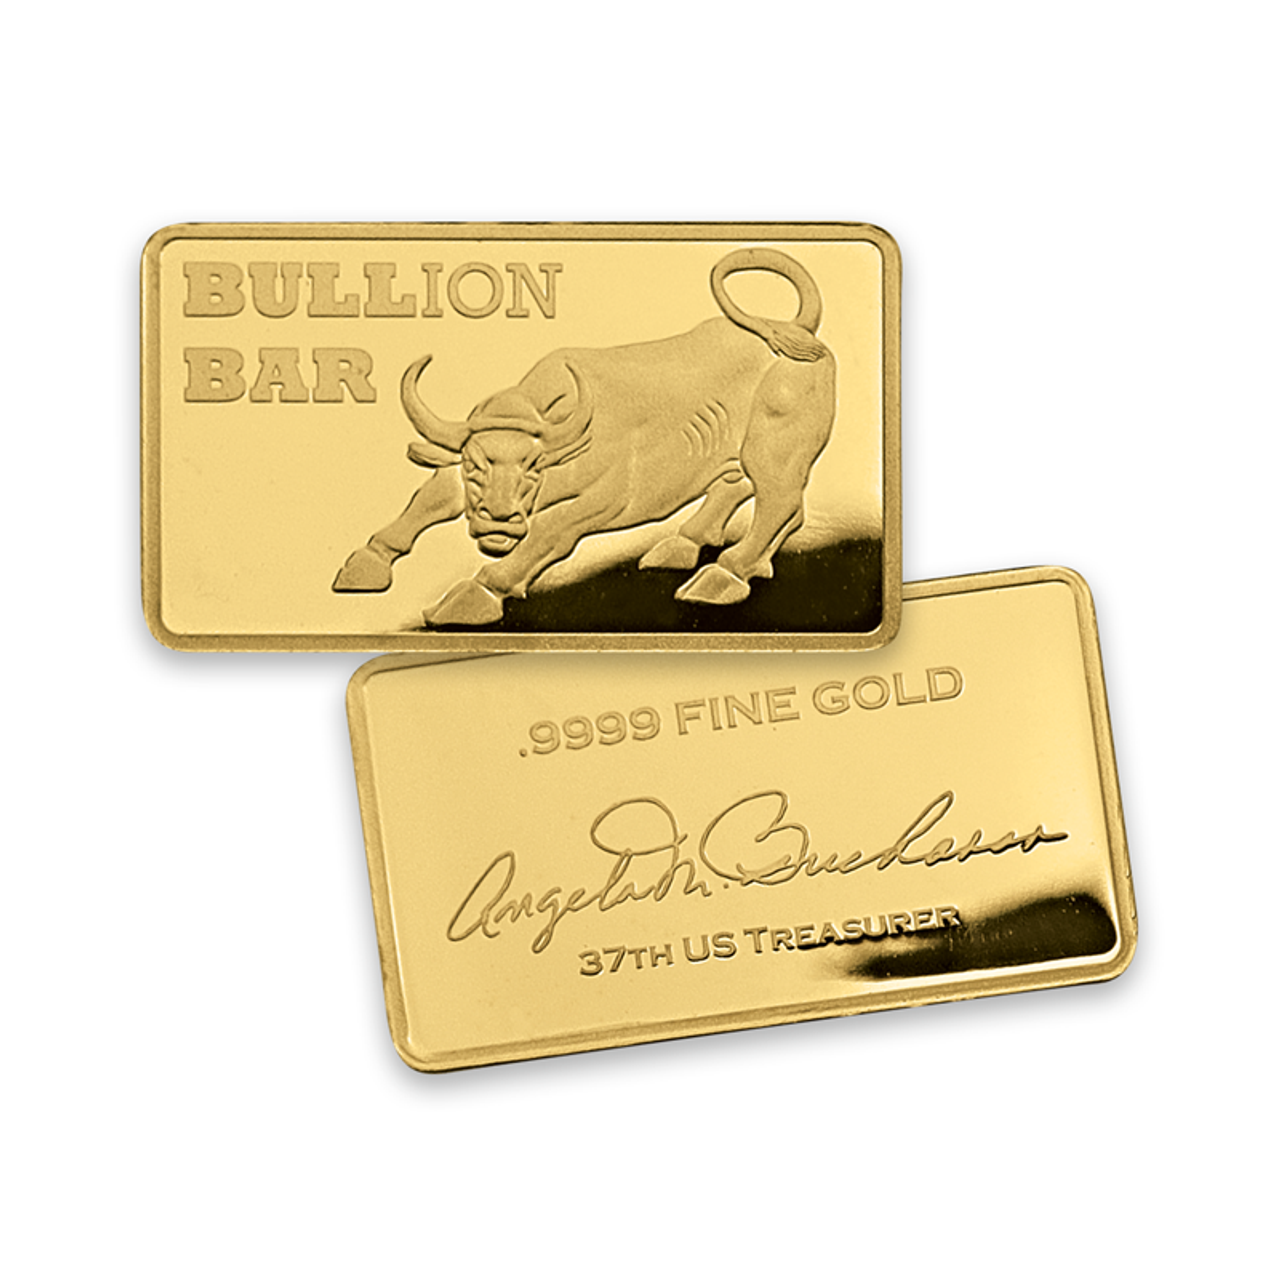 Make Your Own Gold Bars – Make Your Own Gold Bars.com